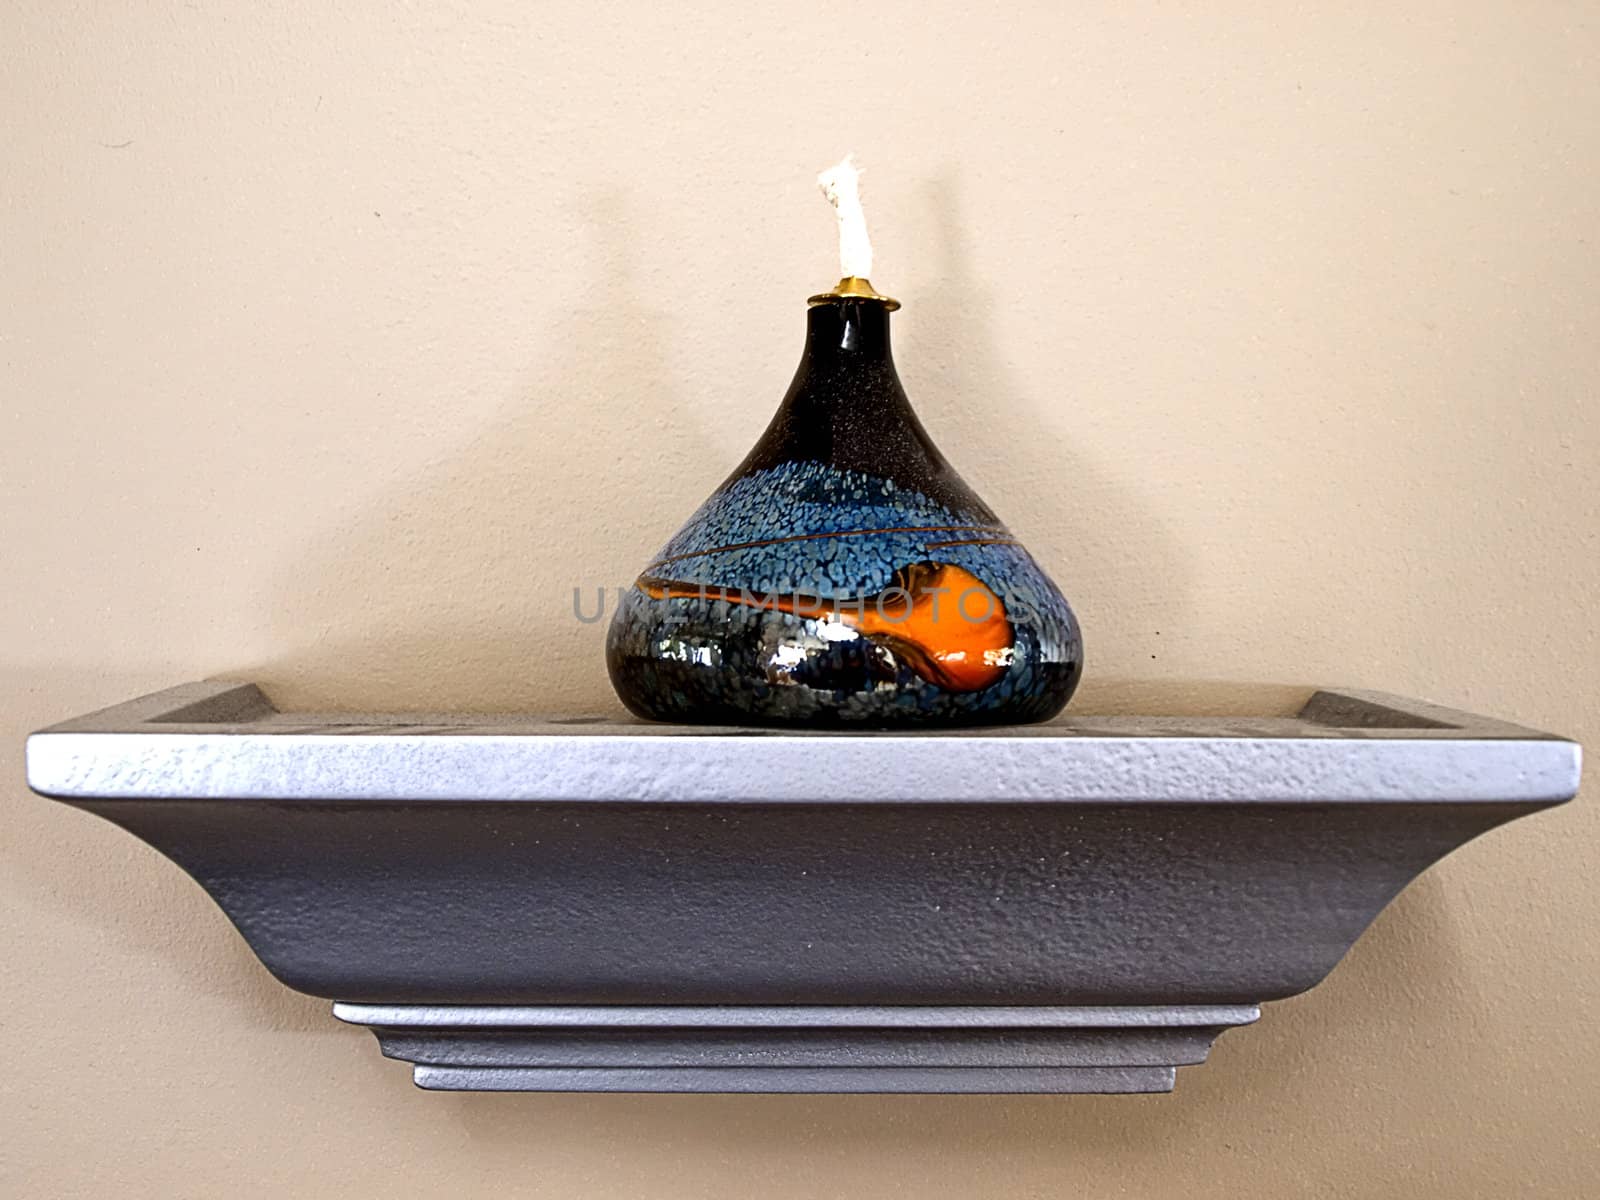 Decorative oil lamp on a shelf.